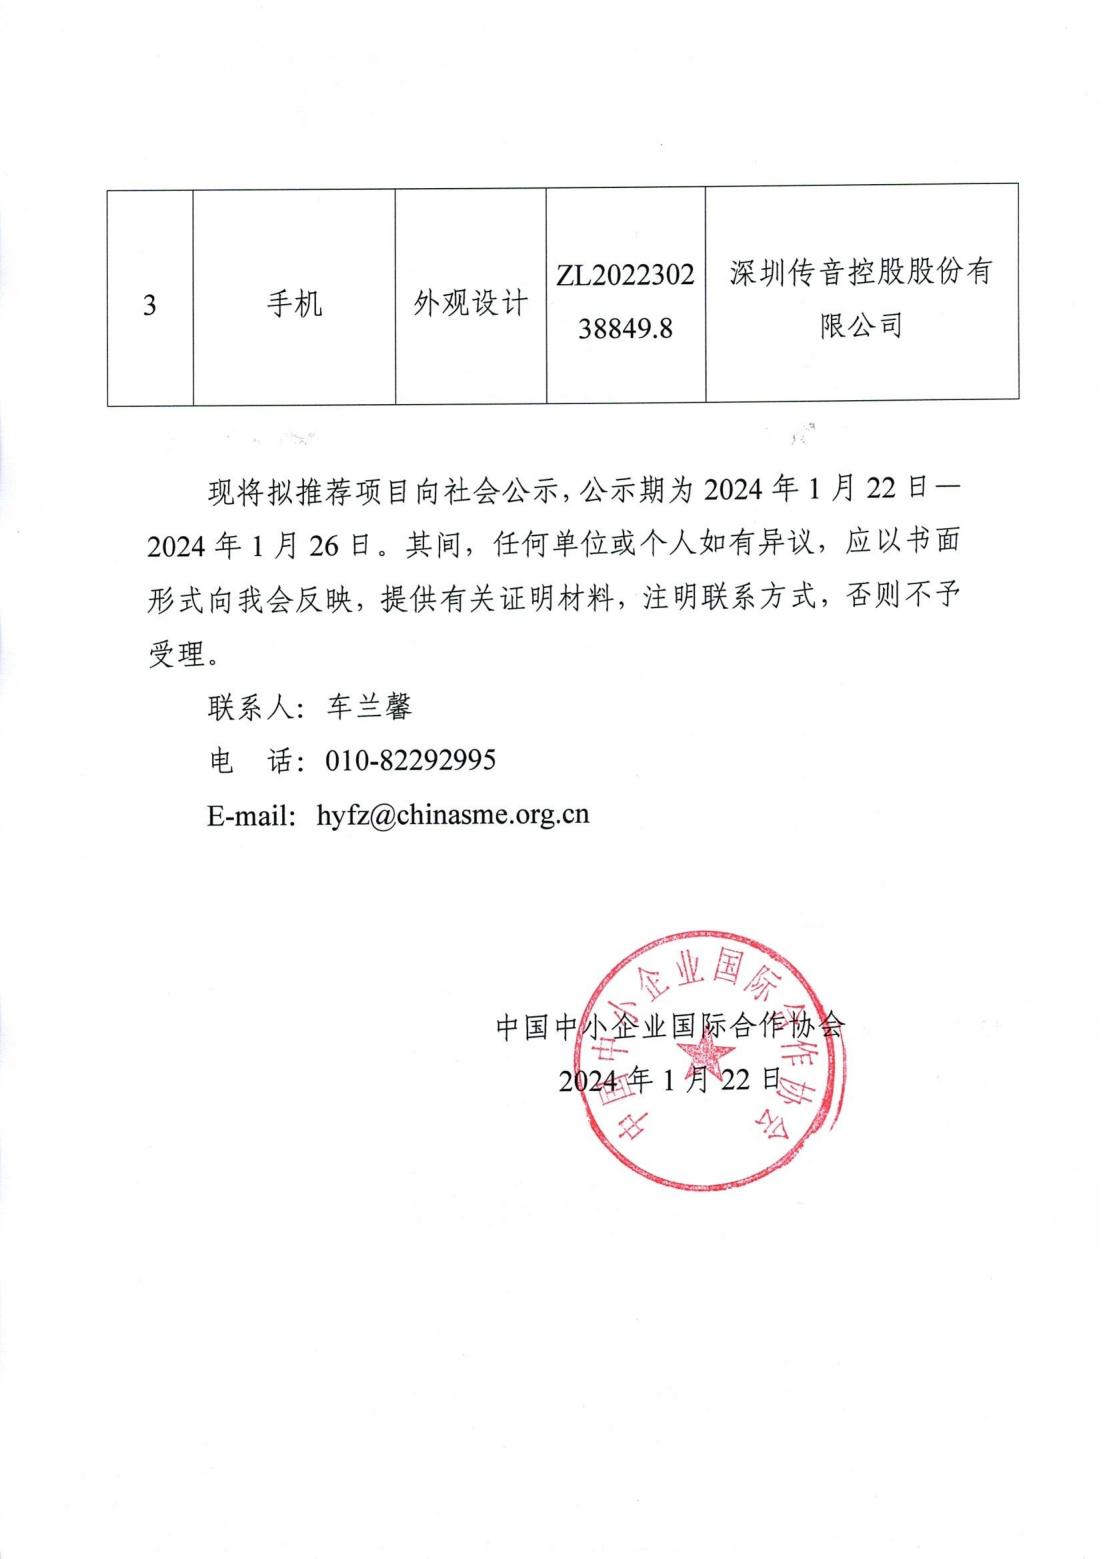 中国中小企业国际合作协会关于推荐参评第二十五届中国专利奖项目的公示（盖章扫描件）_01.jpg